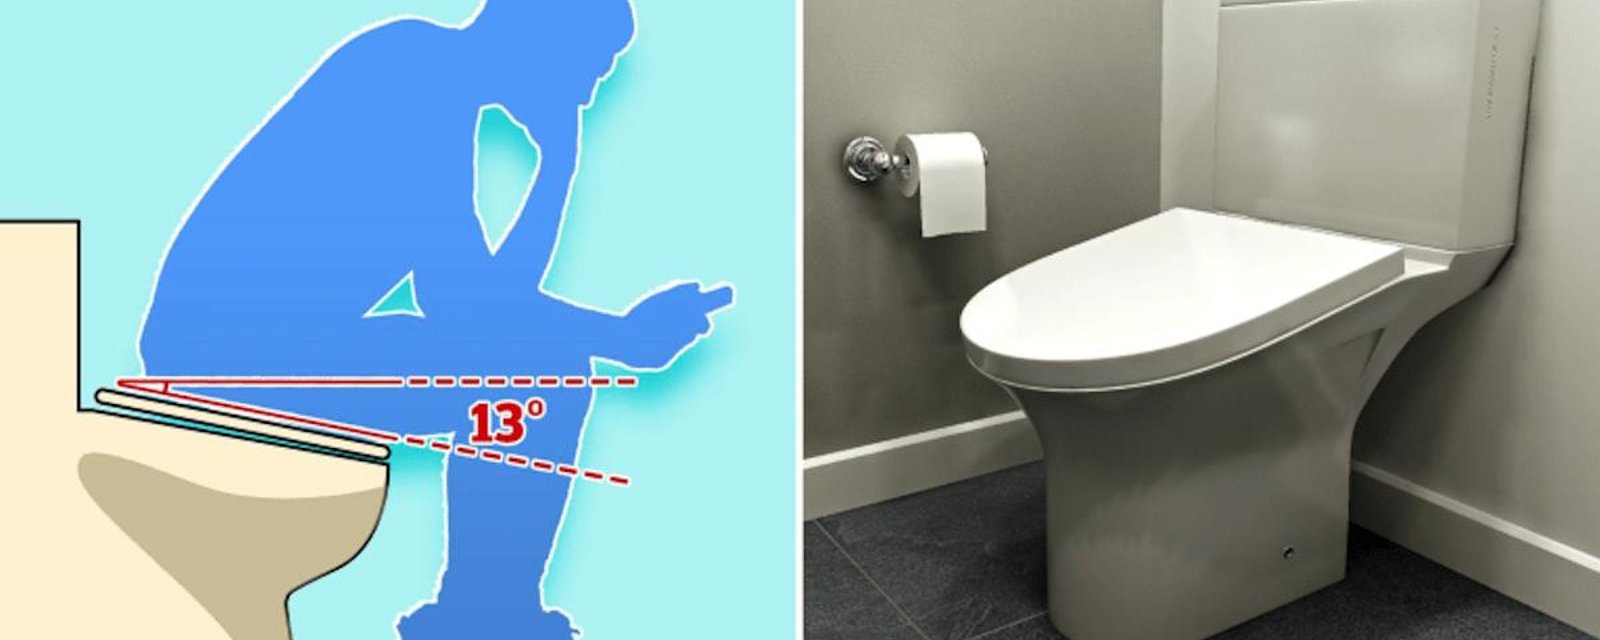 Vie de bureau: des toilettes pour éviter que les employés y demeurent trop longtemps!